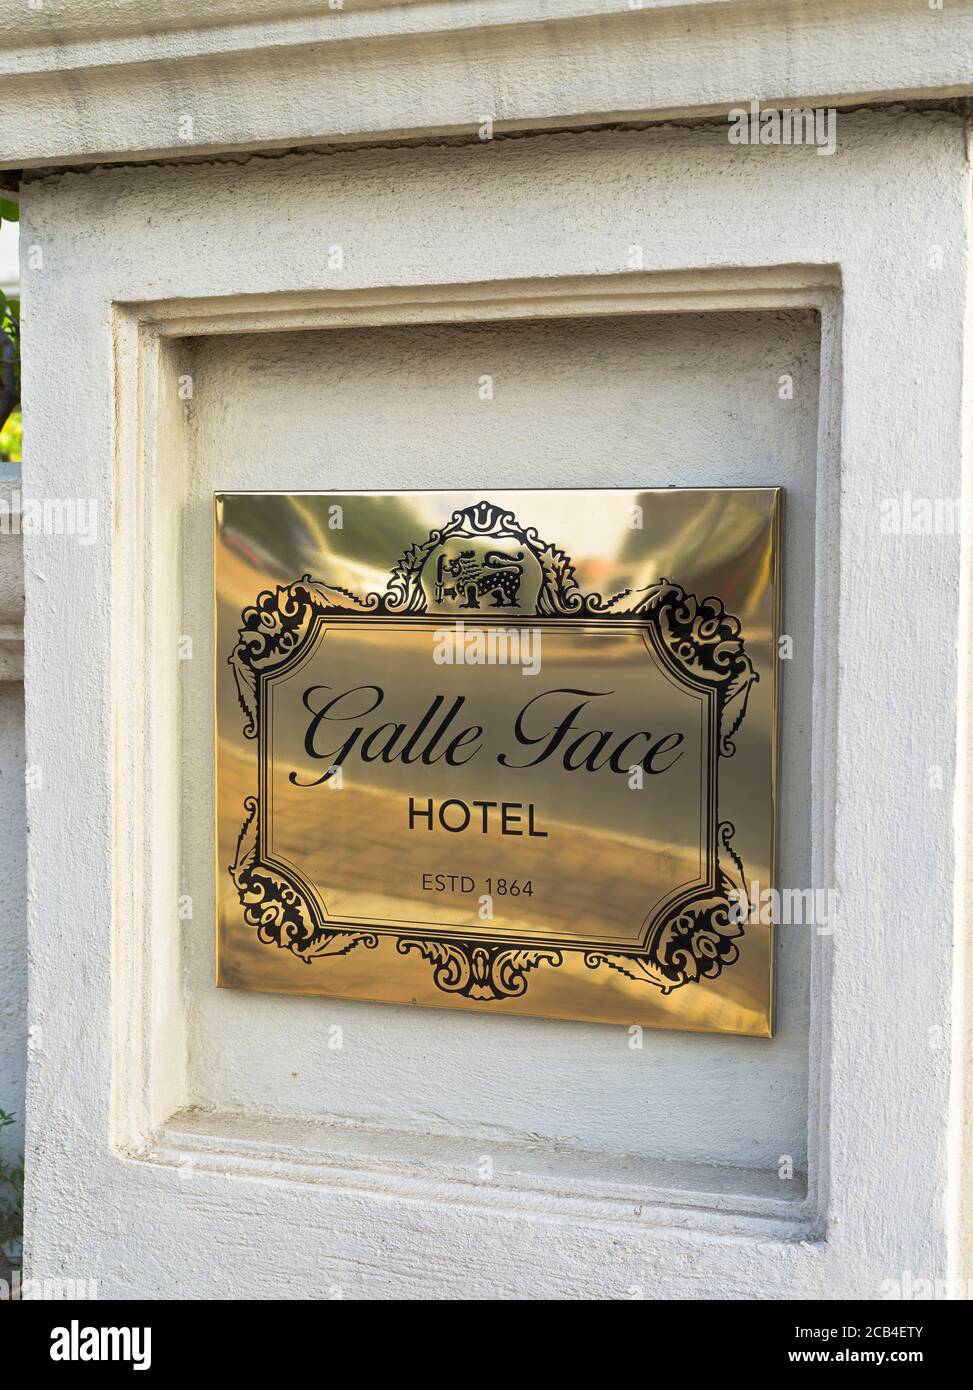 dh Galle face Hotel COLOMBO VILLE SRI LANKA Hôtels laiton plaque signalétique à l'extérieur de l'entrée Banque D'Images